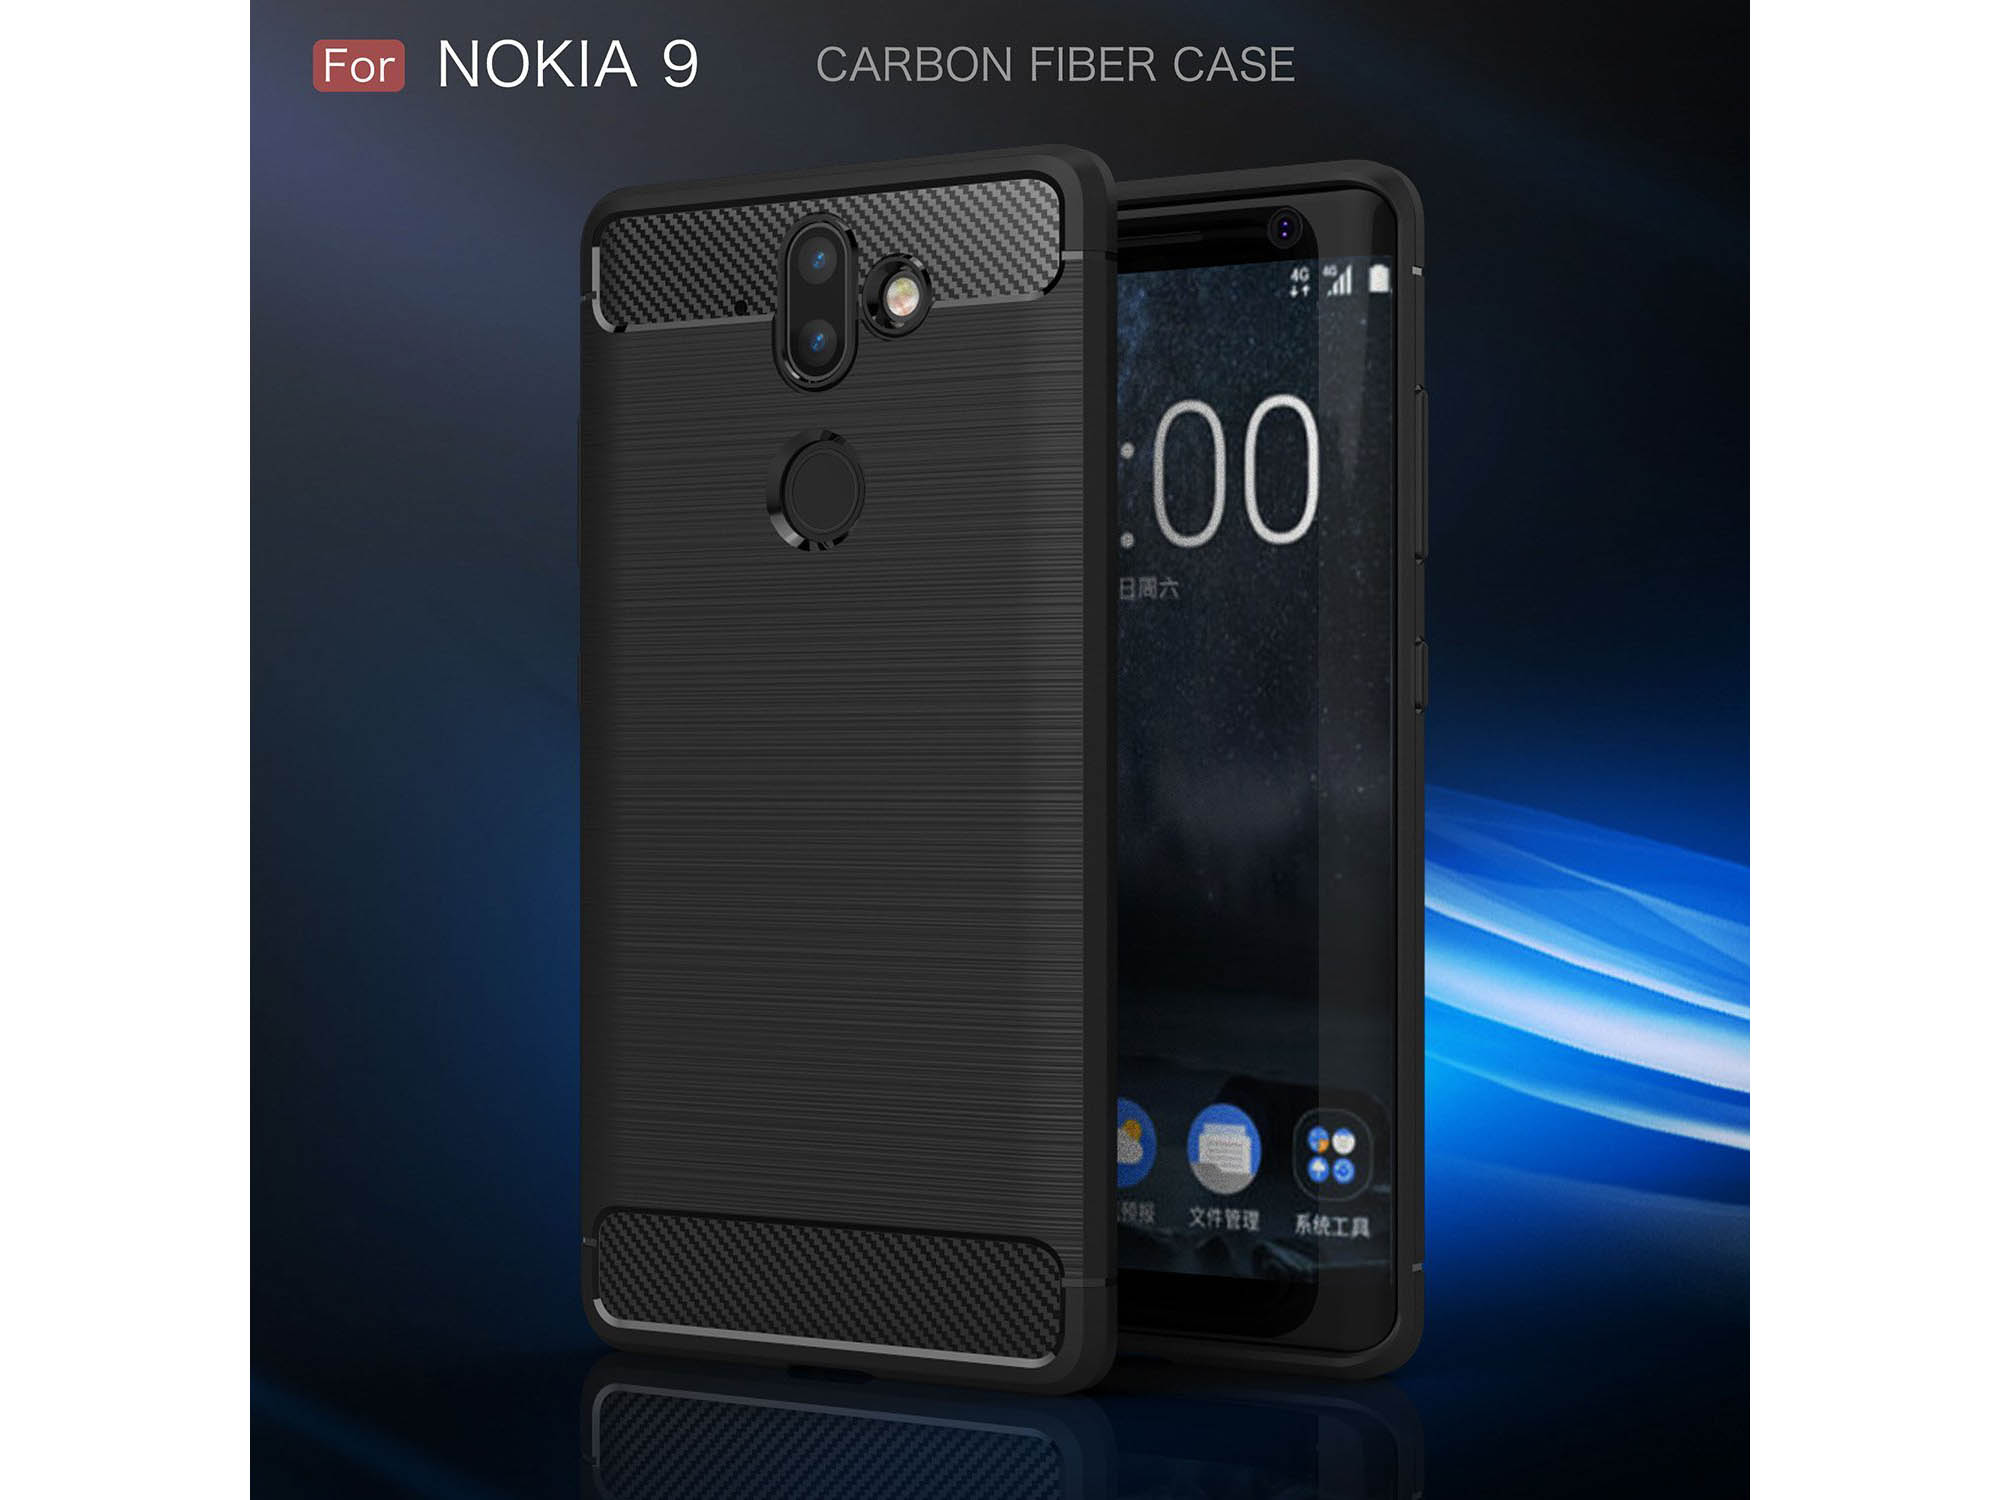 Nhà sản xuất ốp
lưng tiết
lộ thiết kế của Nokia 9: Màn hình 18:9, camera kép